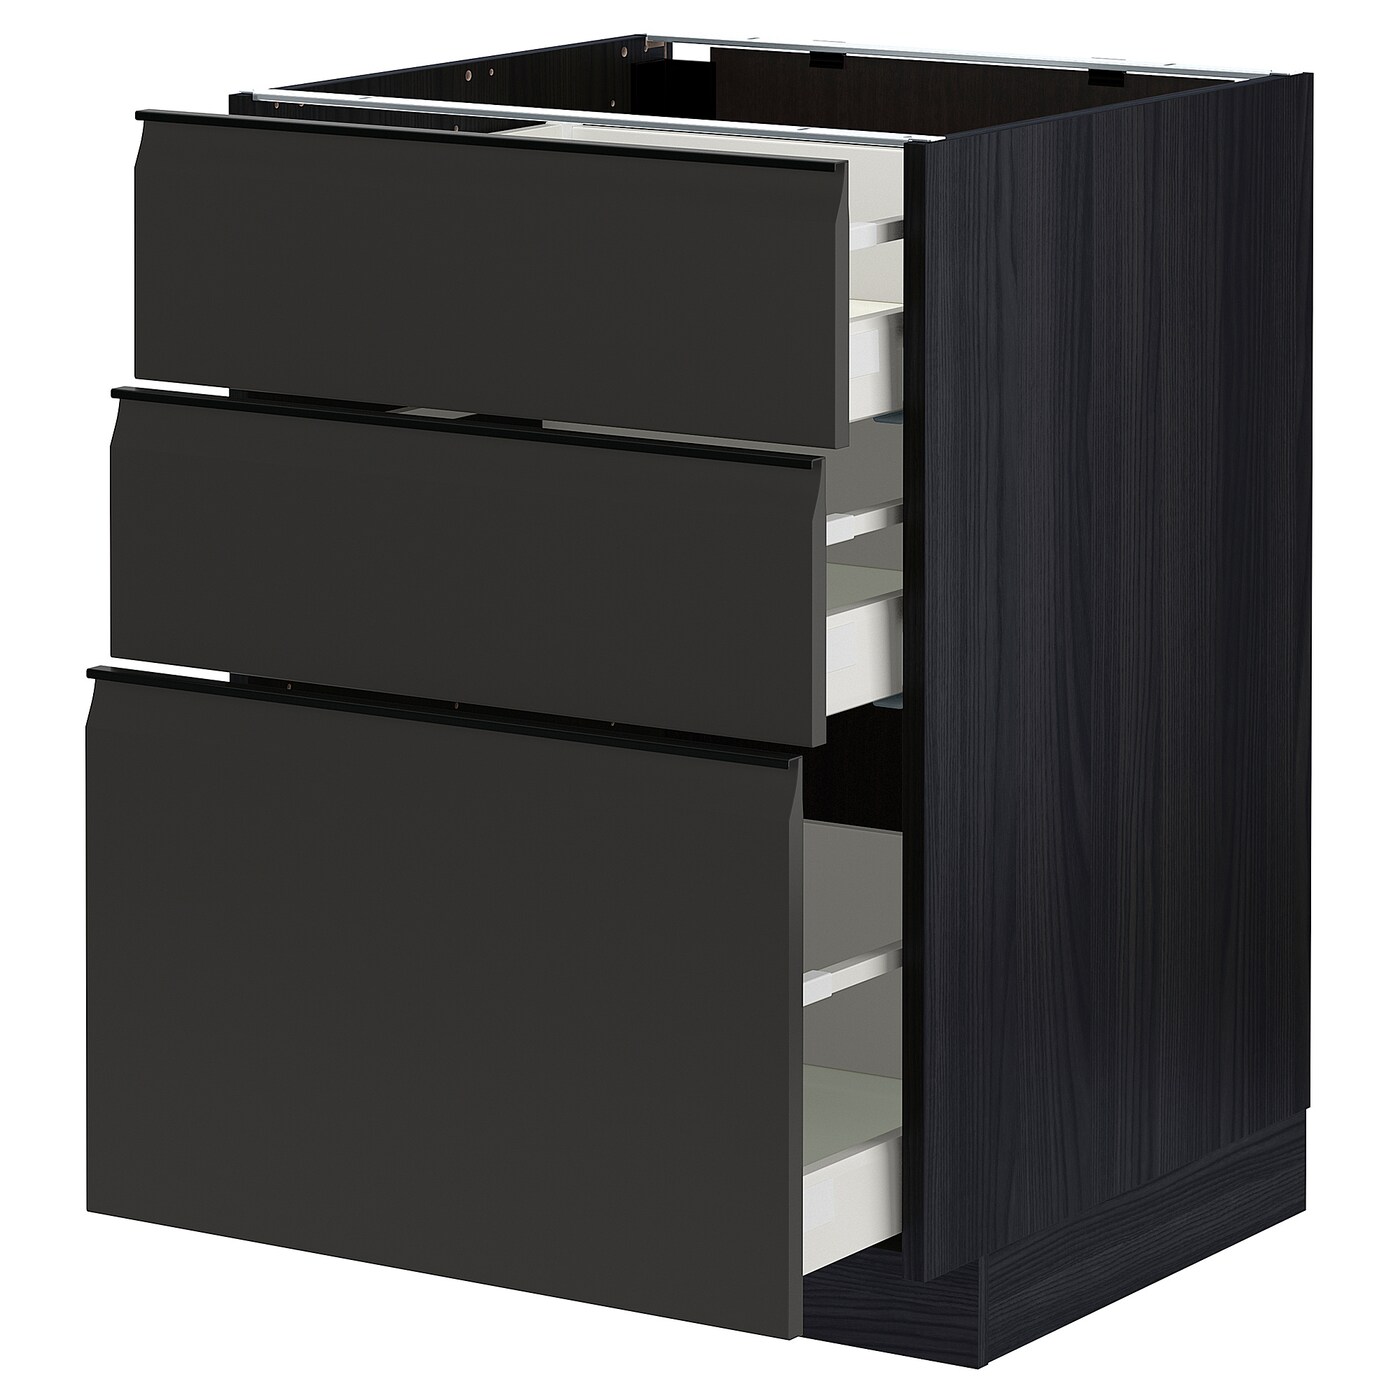 Напольный шкаф - METOD / MAXIMERA IKEA/ МЕТОД/ МАКСИМЕРА ИКЕА,  88х60 см, коричневый